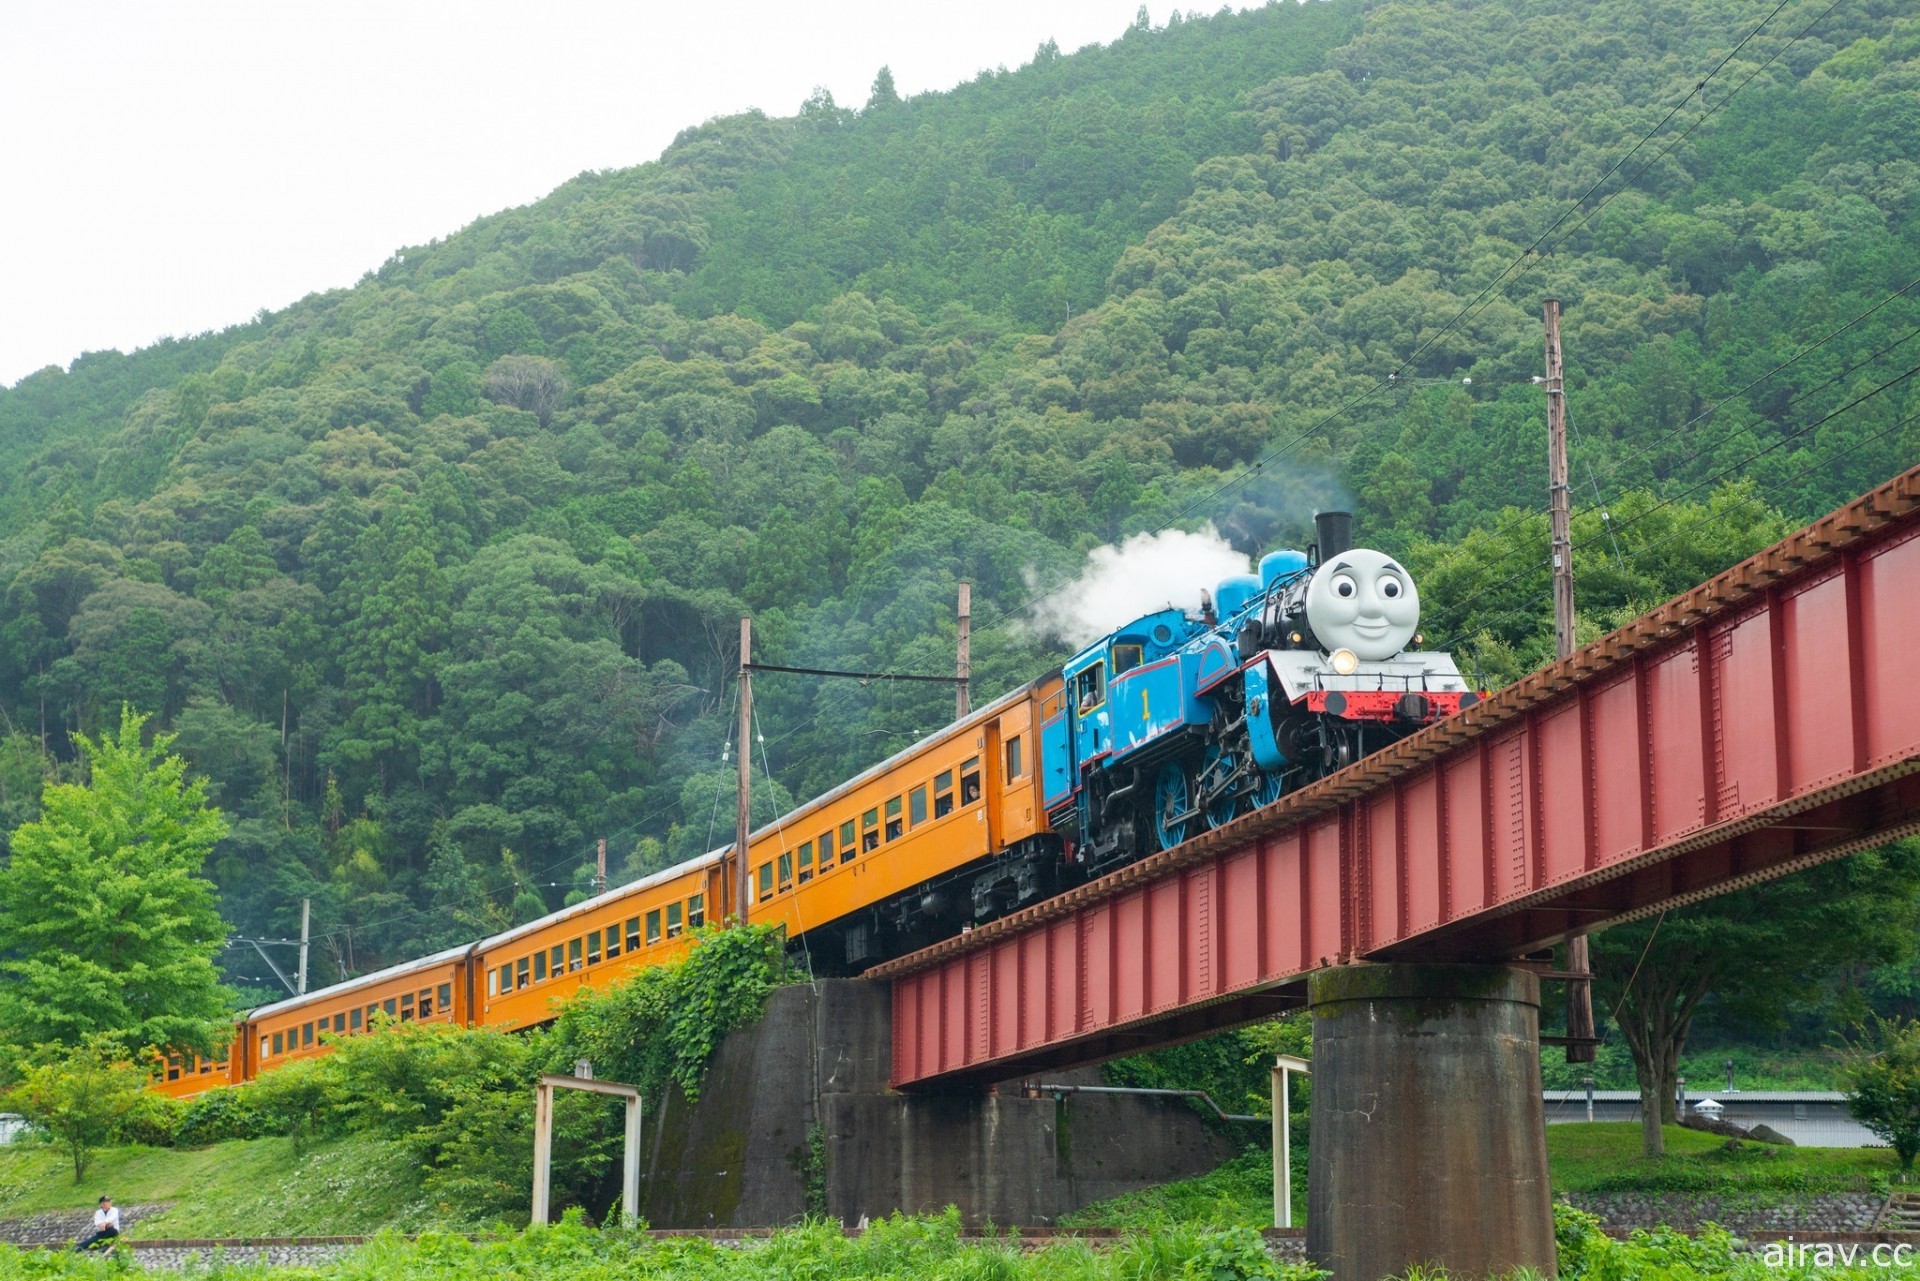 日本大井川鐵道將自 12/24 起推出湯瑪士小火車期間限定特別運行企劃